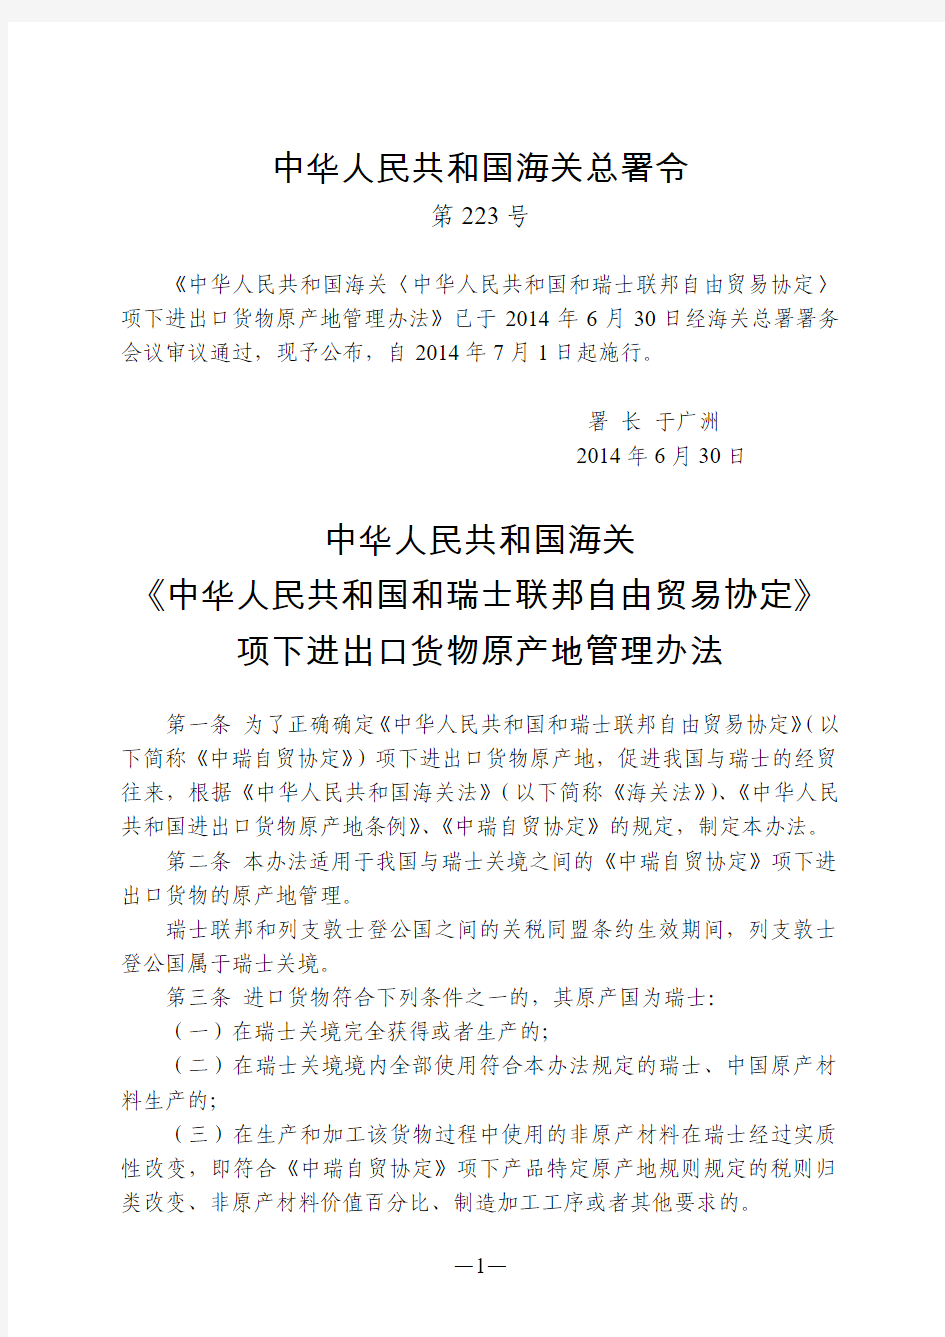 中华人民共和国海关《中华人民共和国和瑞士联邦自由贸易协定》项下进出口货物原产地管理办法